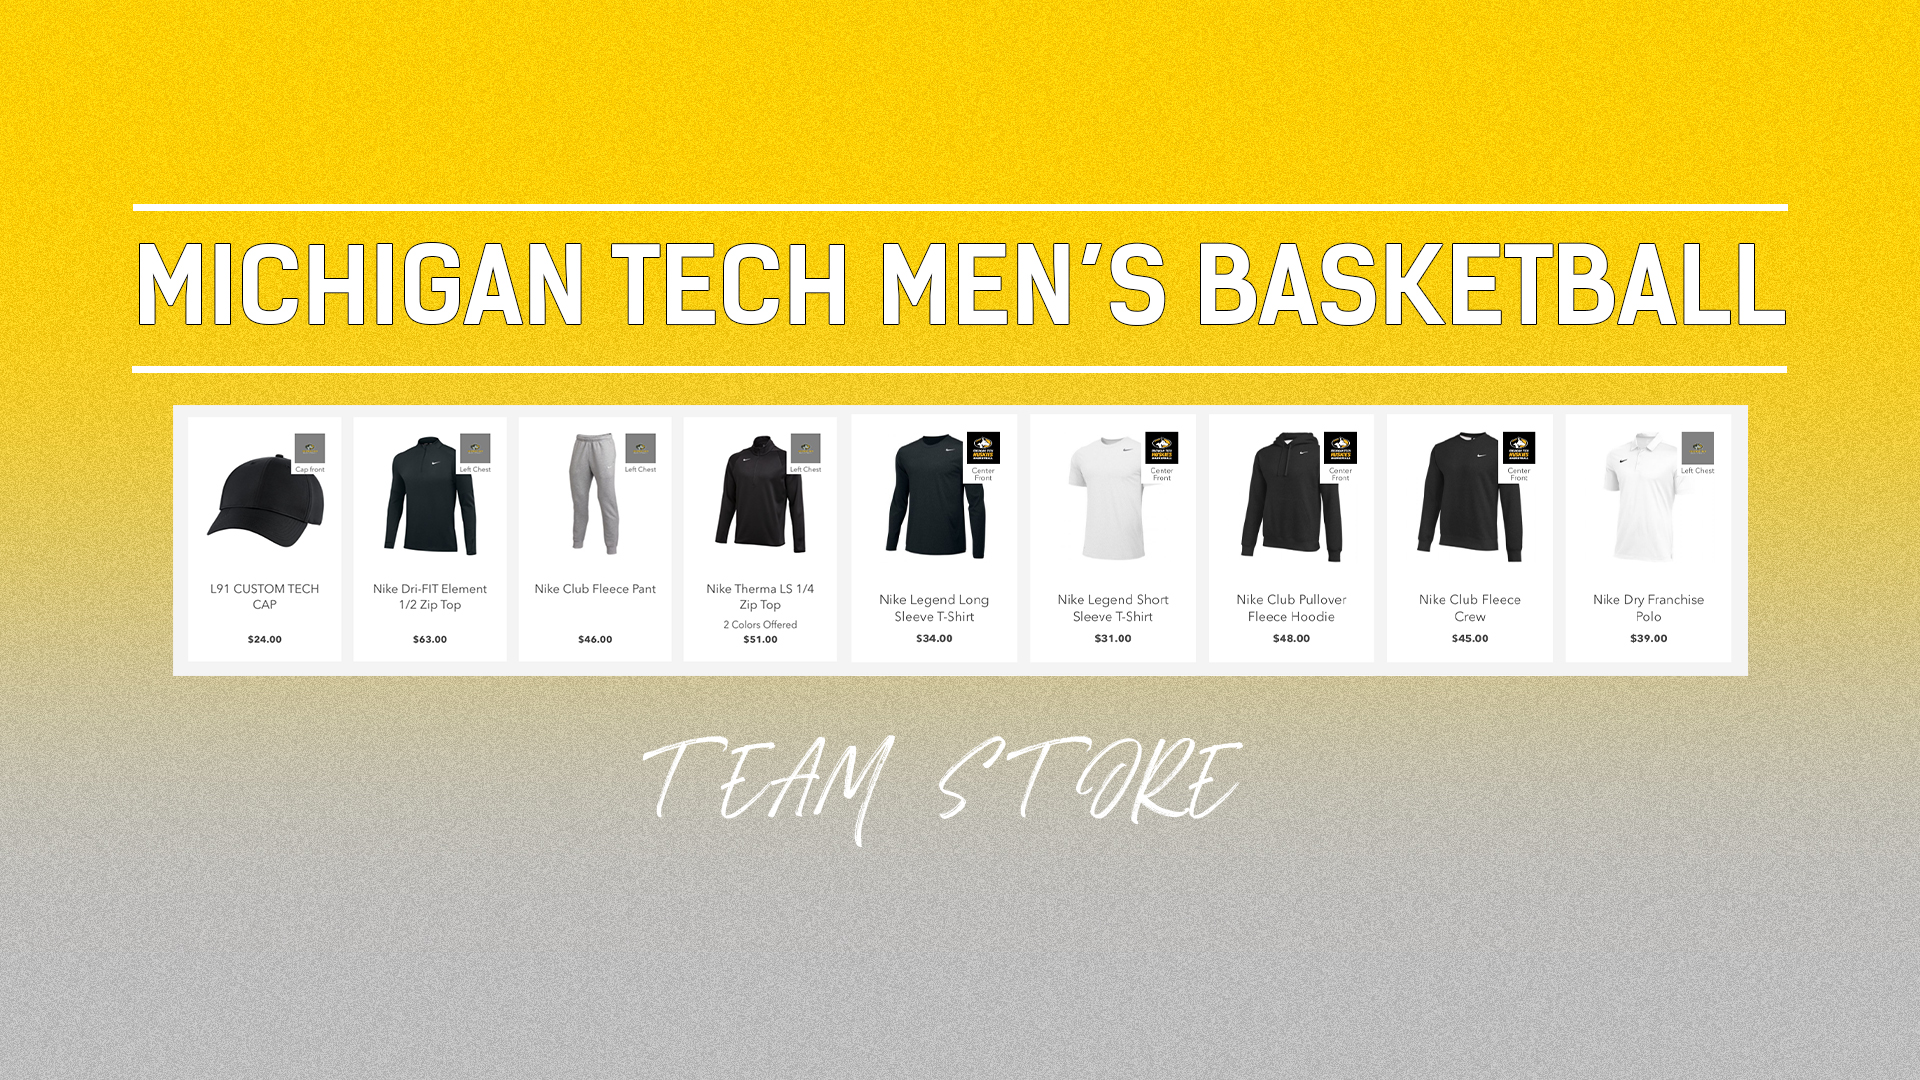 Michigan Tech Men's Basketball Team Store Now Open